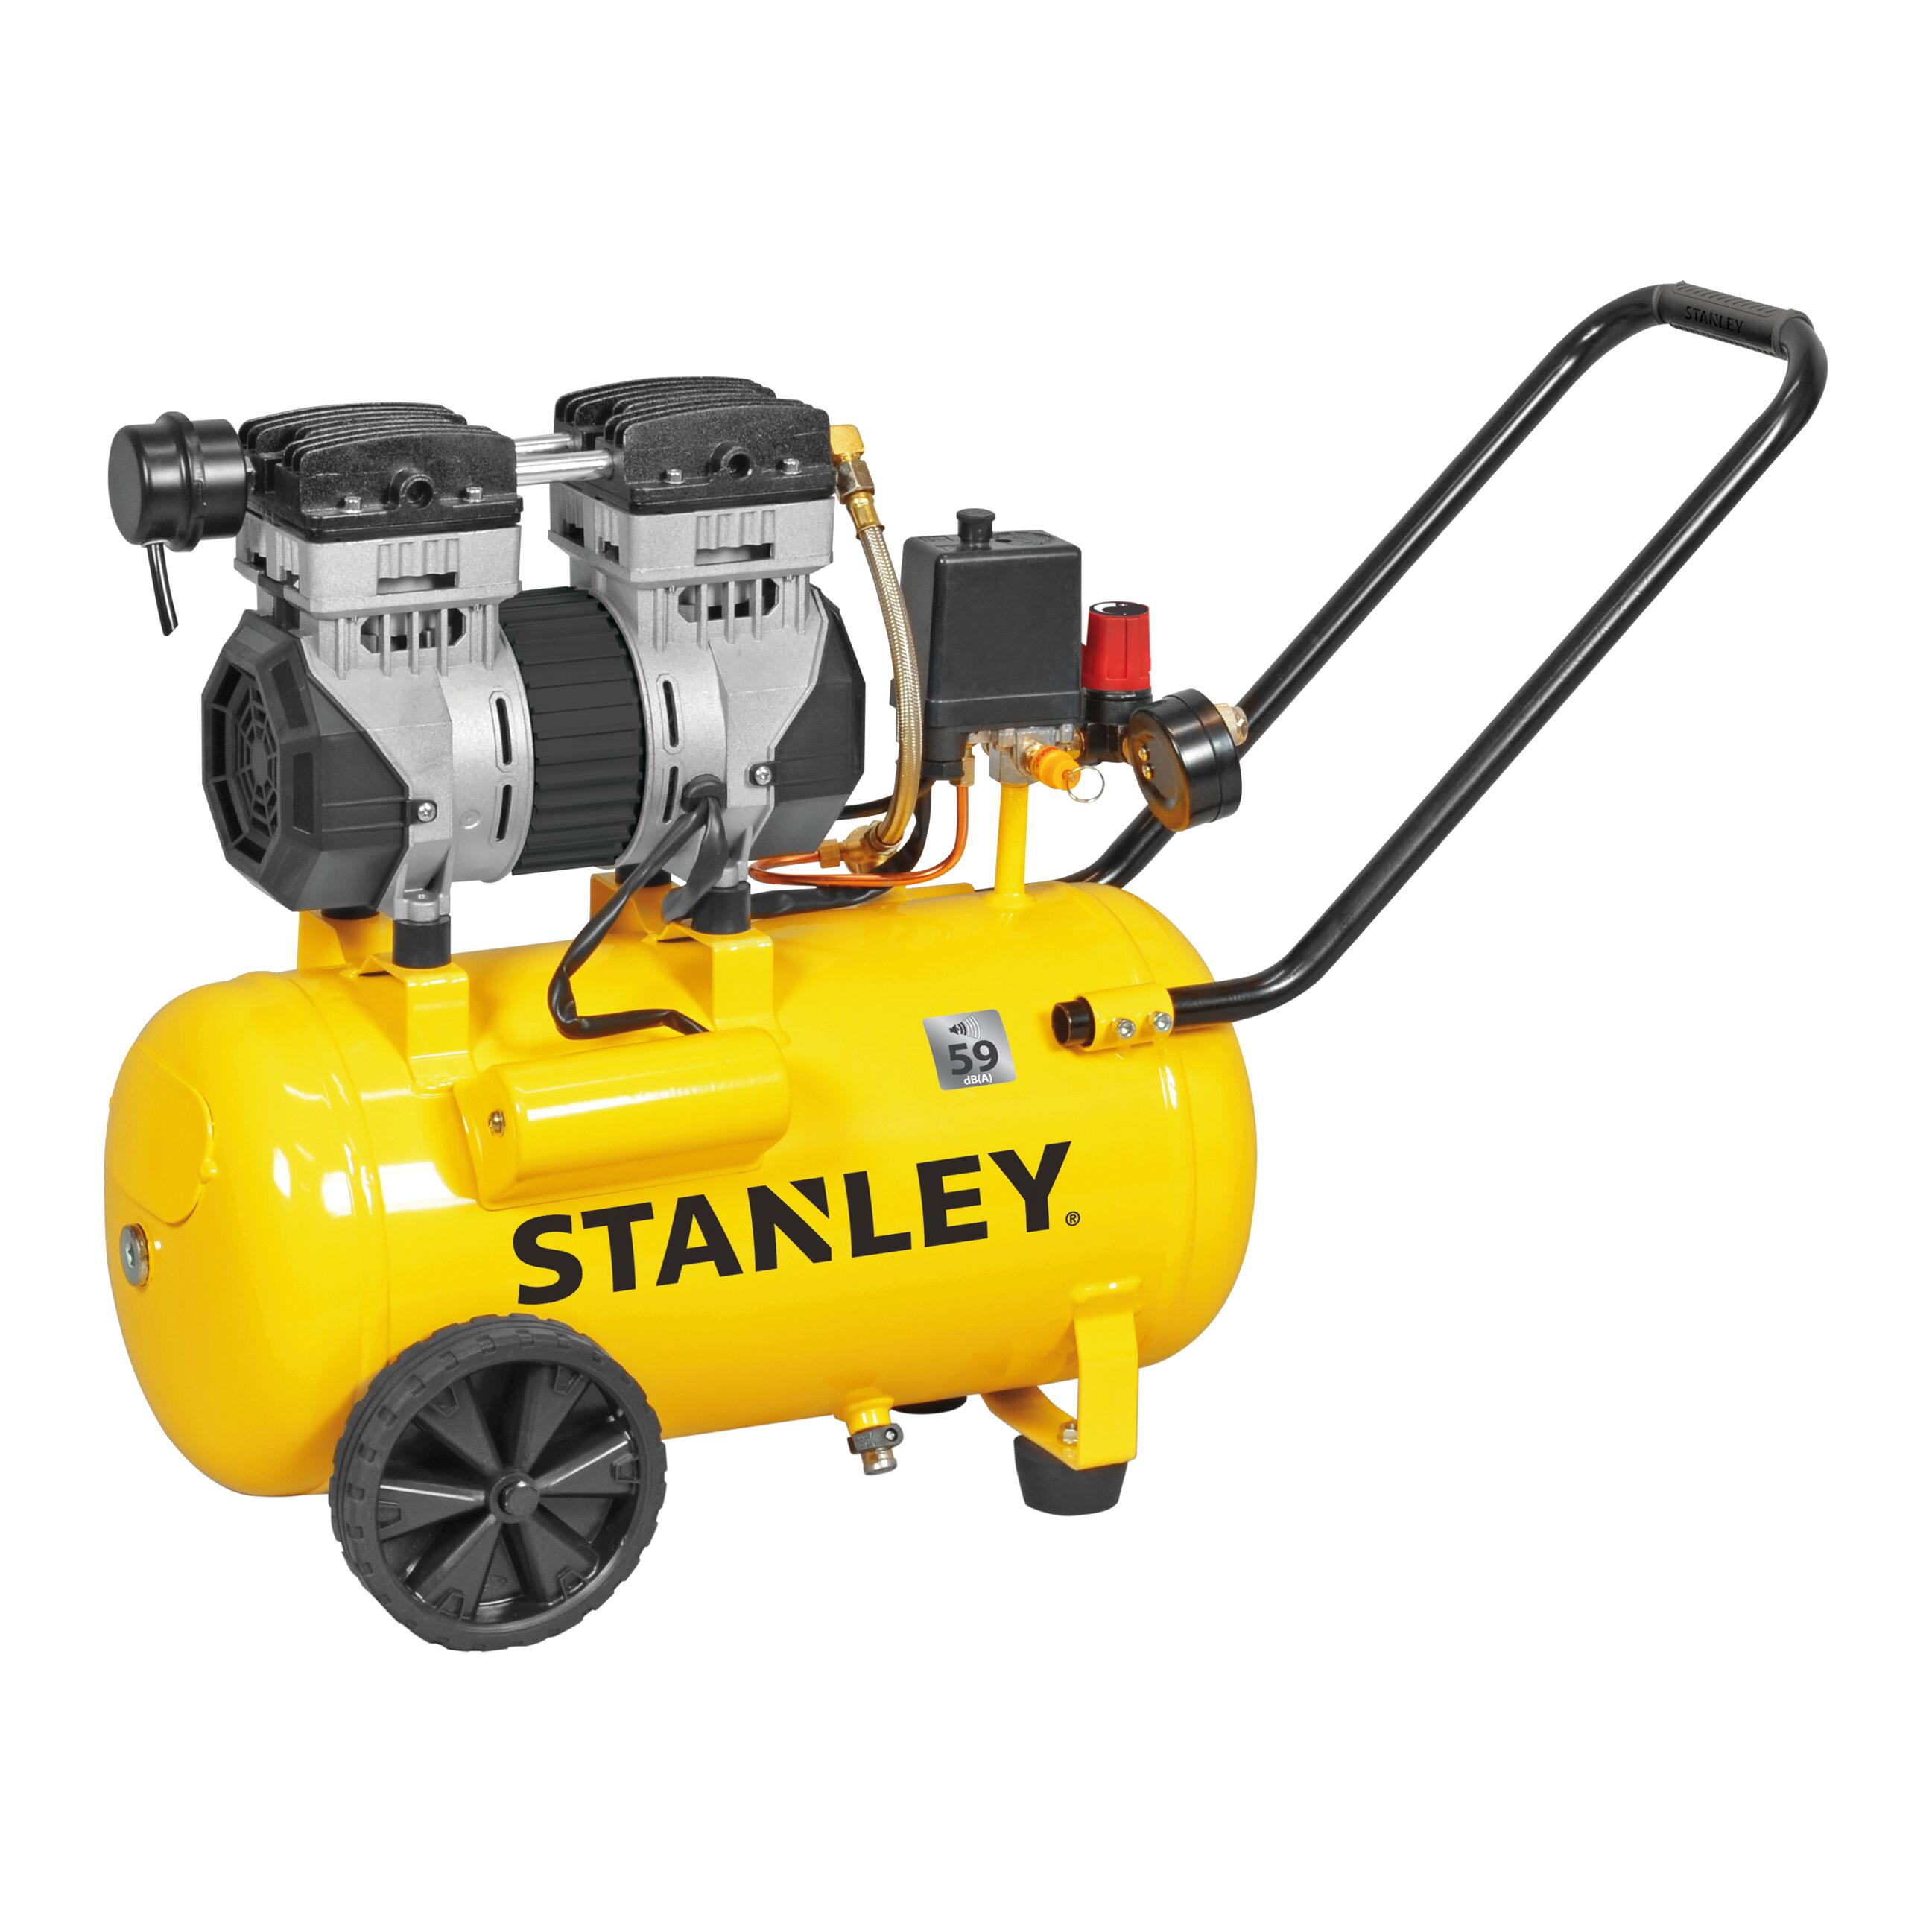 Compressore silenziato STANLEY SXCMS1324HE, 1.3 hp, 8 bar, 24 litri